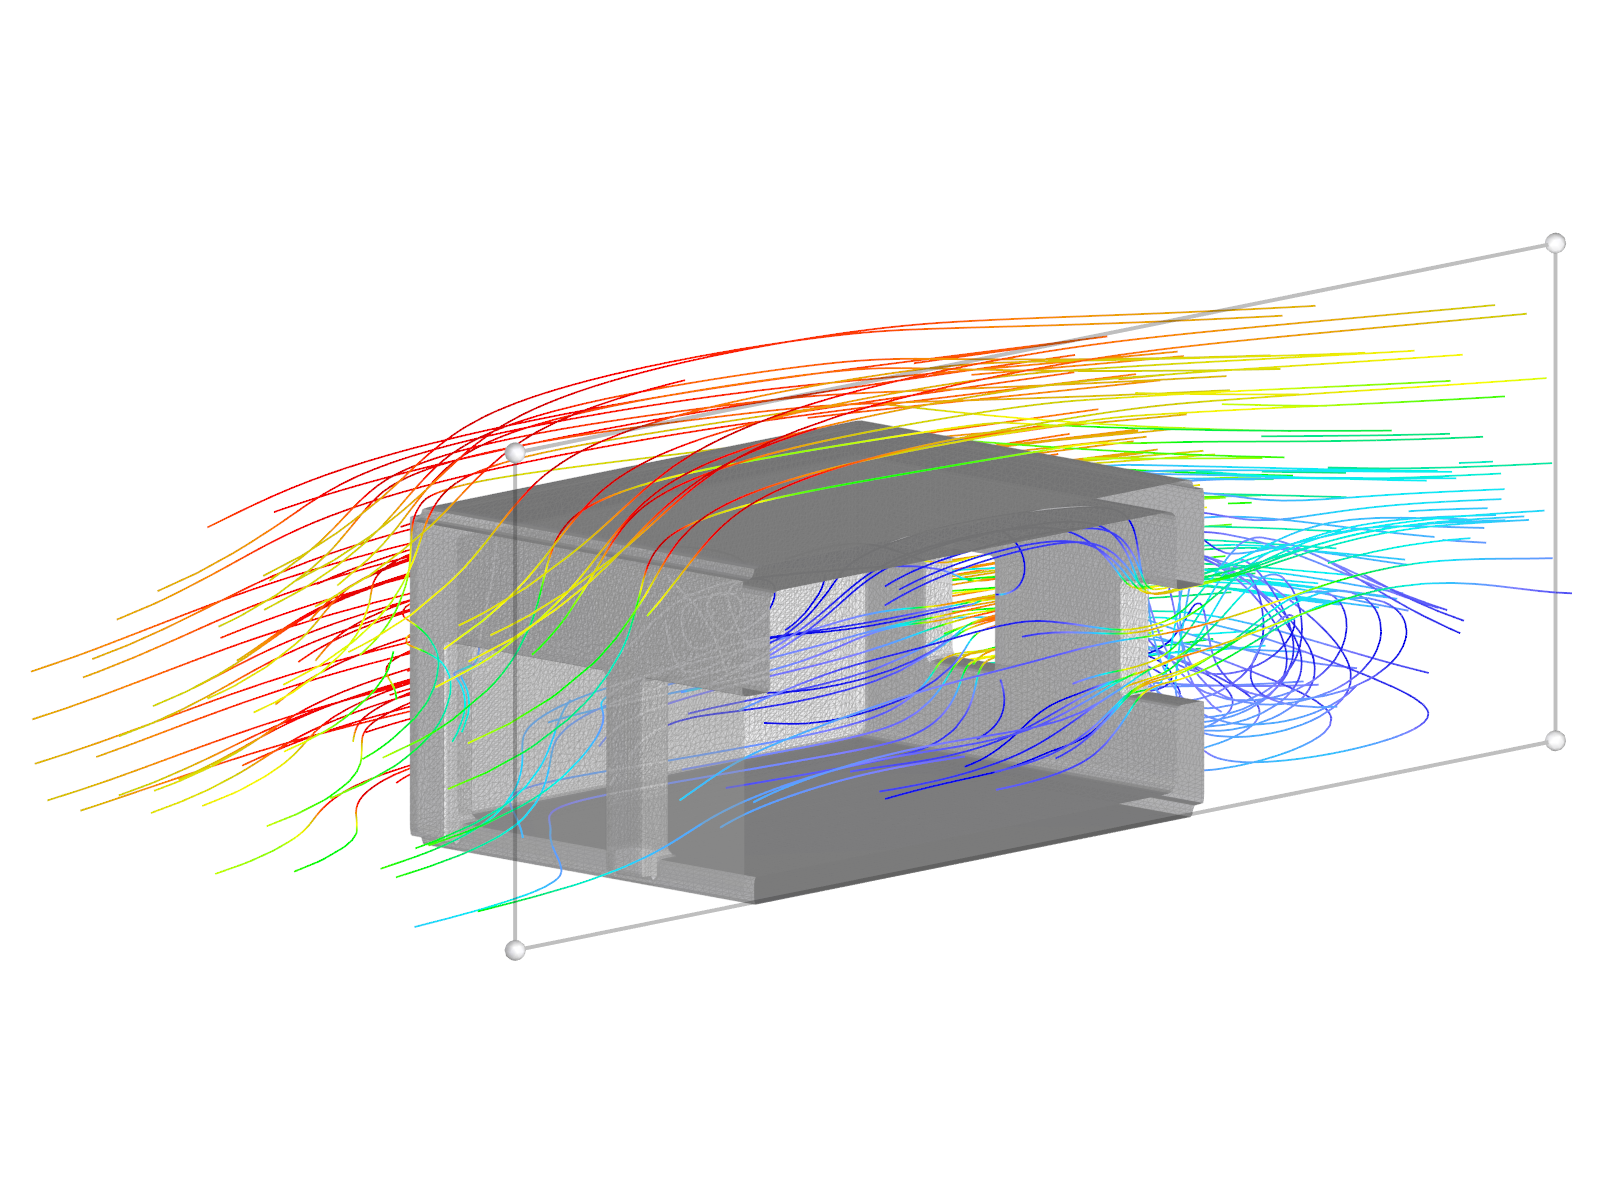 Garagenmodell mit teilweise winddurchlässiger Fläche